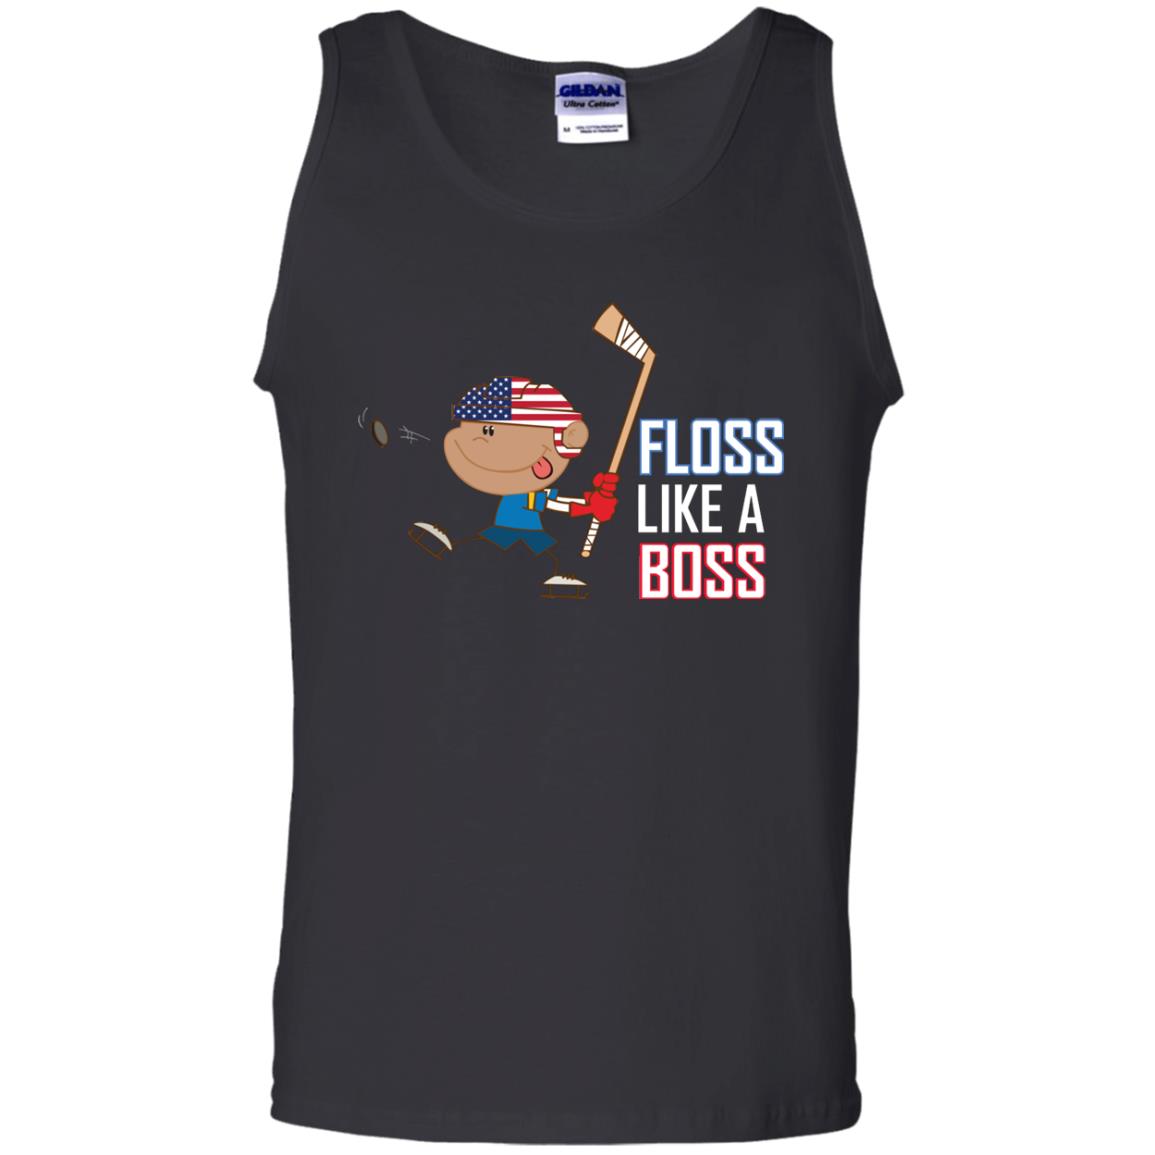 Floss Like A Boss Shirt For Hockey PlayersG220 Gildan 100% Cotton Tank Top